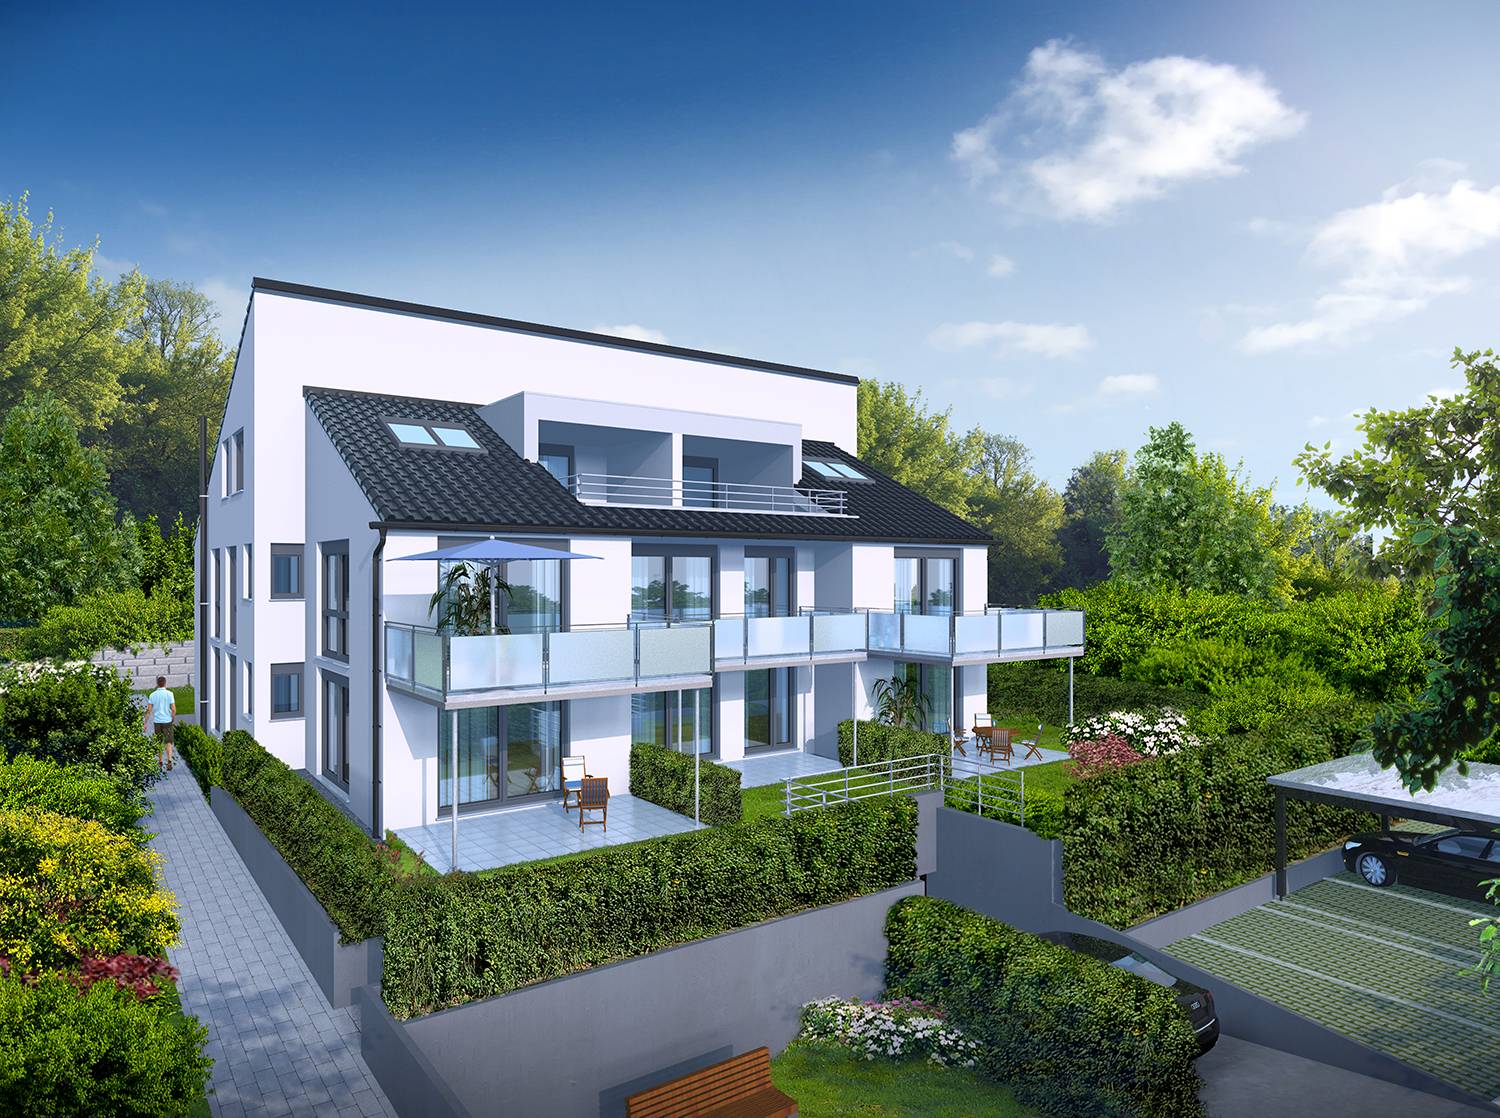 3D-Visualisierungen des Neubaus eines Mehrparteienhauses mit 8 Wohneinheiten, einer Tiefgarage und Carports mit Stellplätzen in Johannesstraße 93, 73614 Schorndorf. Produziert für Pfander Immobilien Office aus 71404 Korb im Jahre 2022.